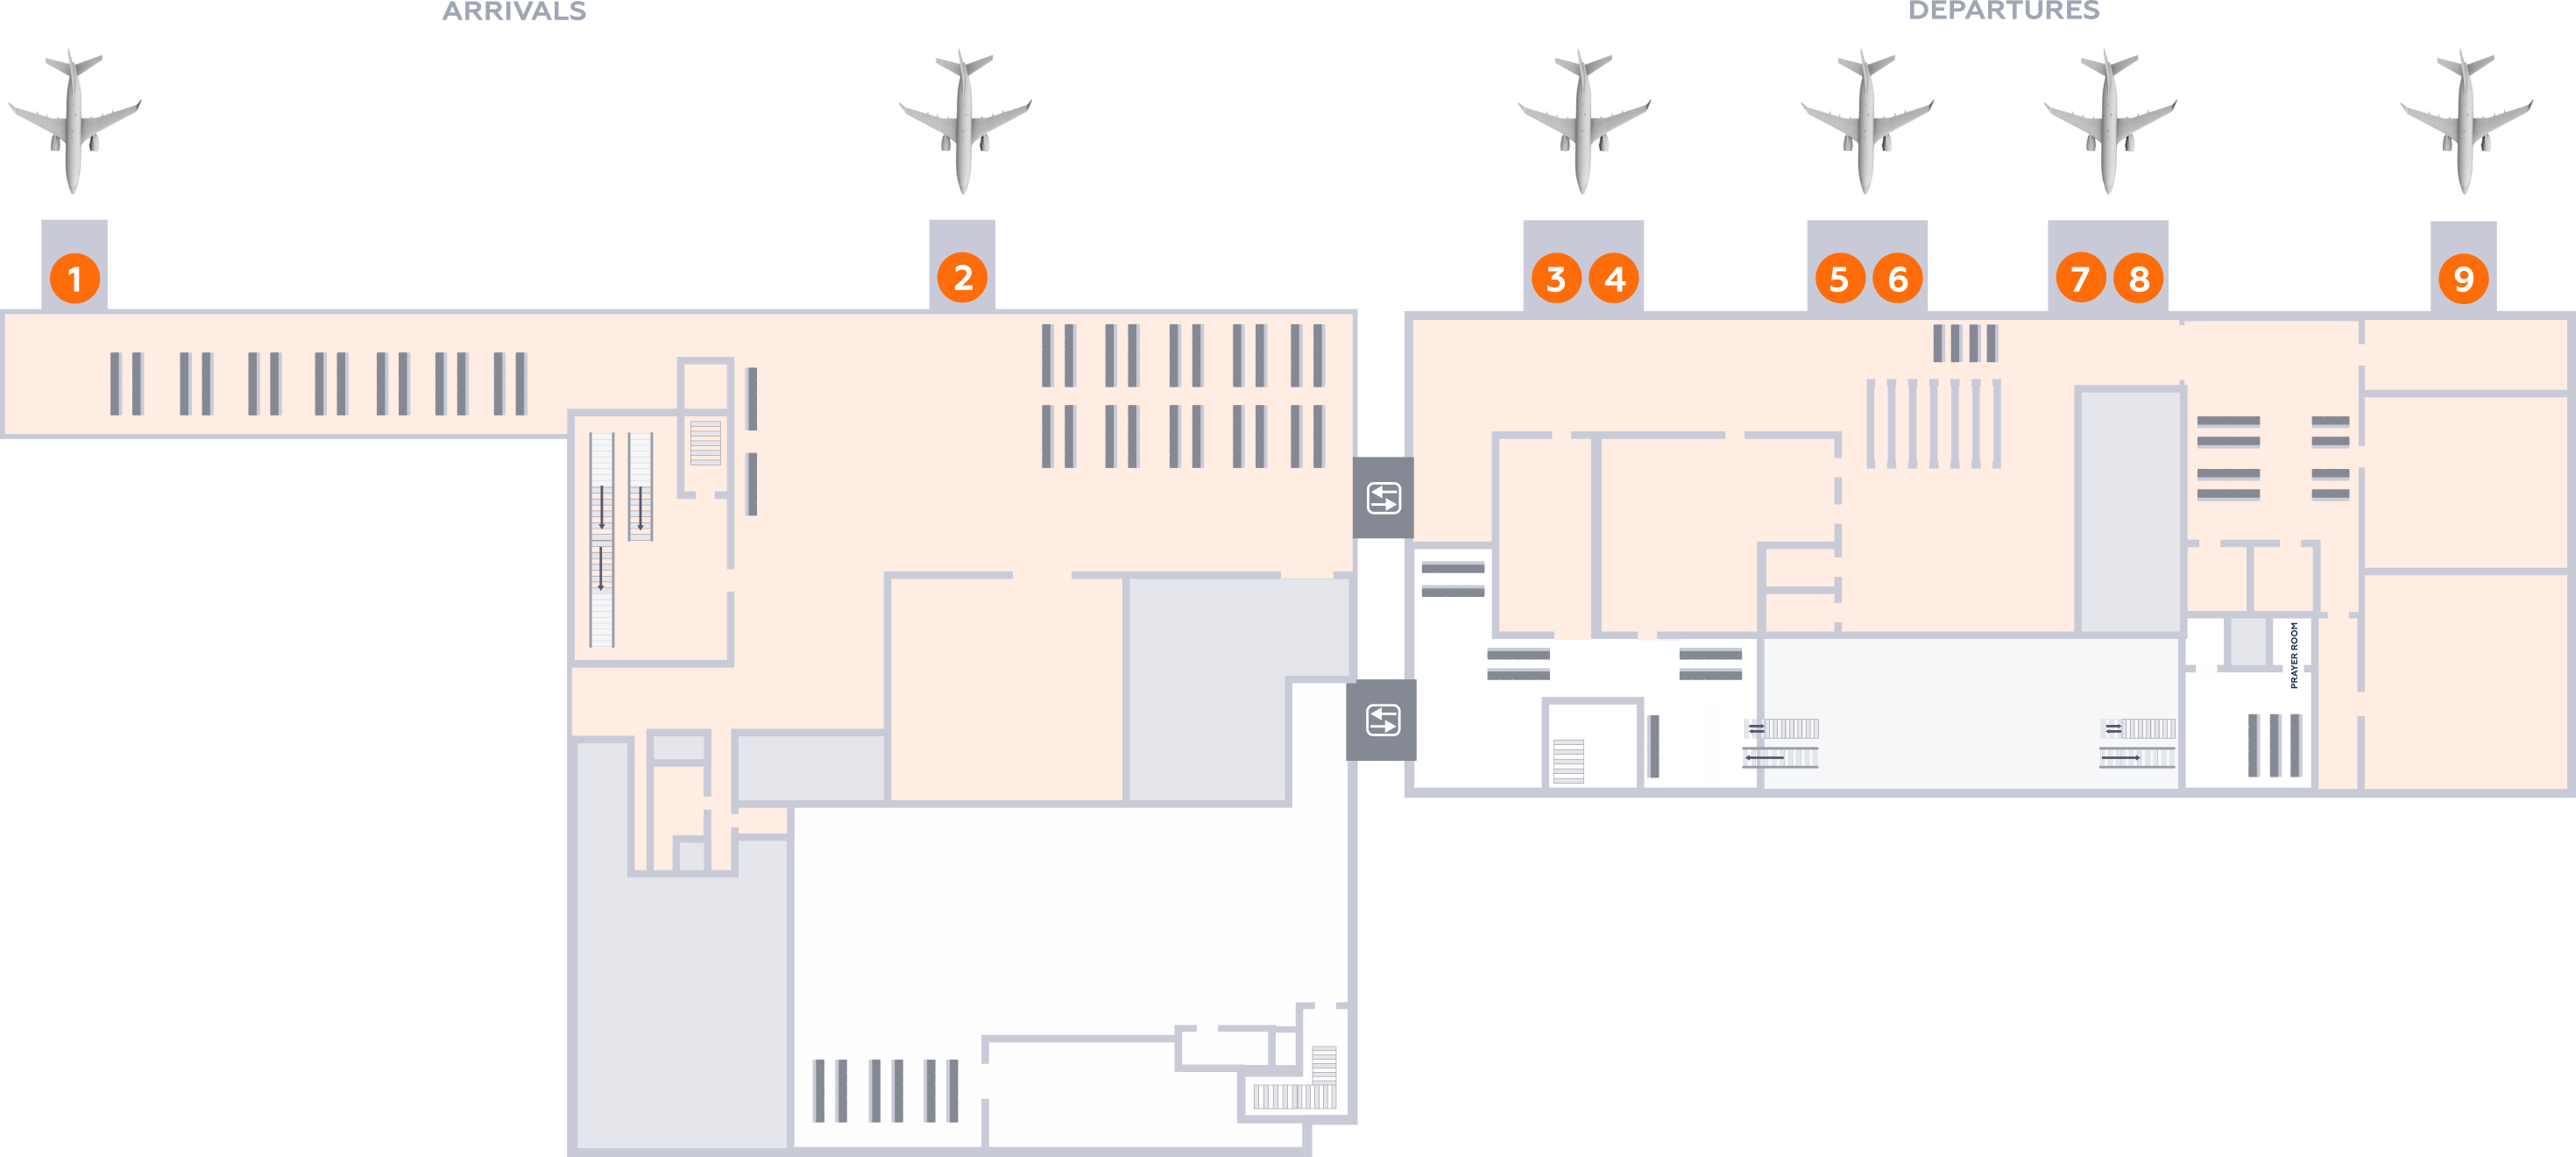 Аэропорт кольцово терминал в схема - 84 фото